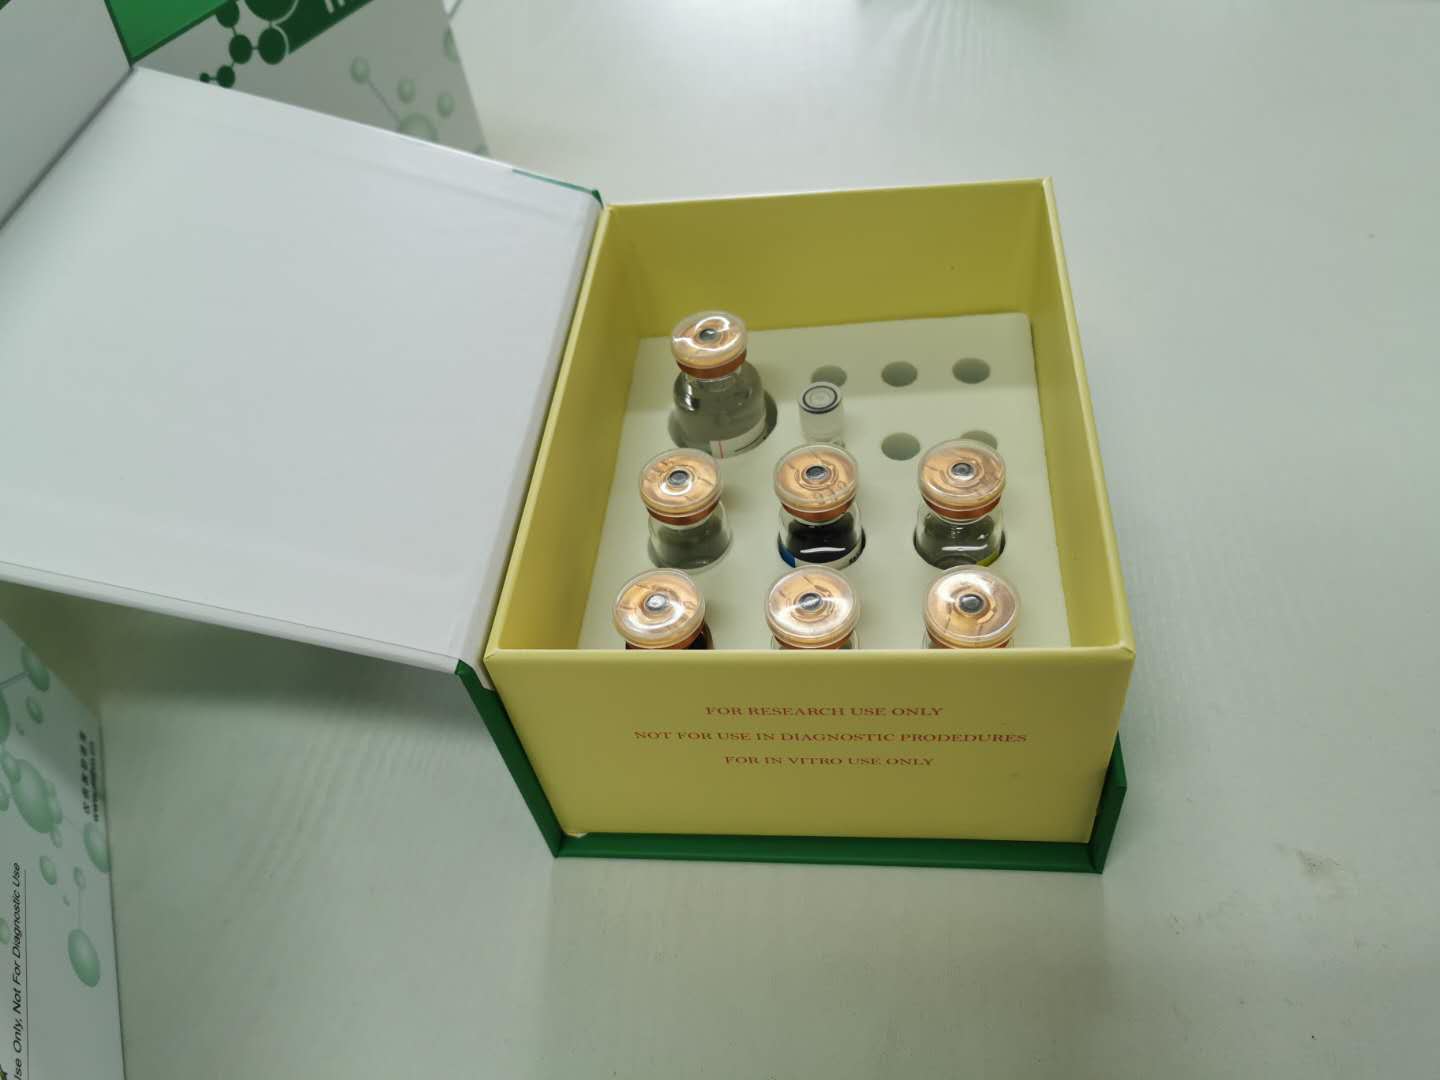 磷脂酶A2受体1抗体酶联免疫试剂盒提供实验数据